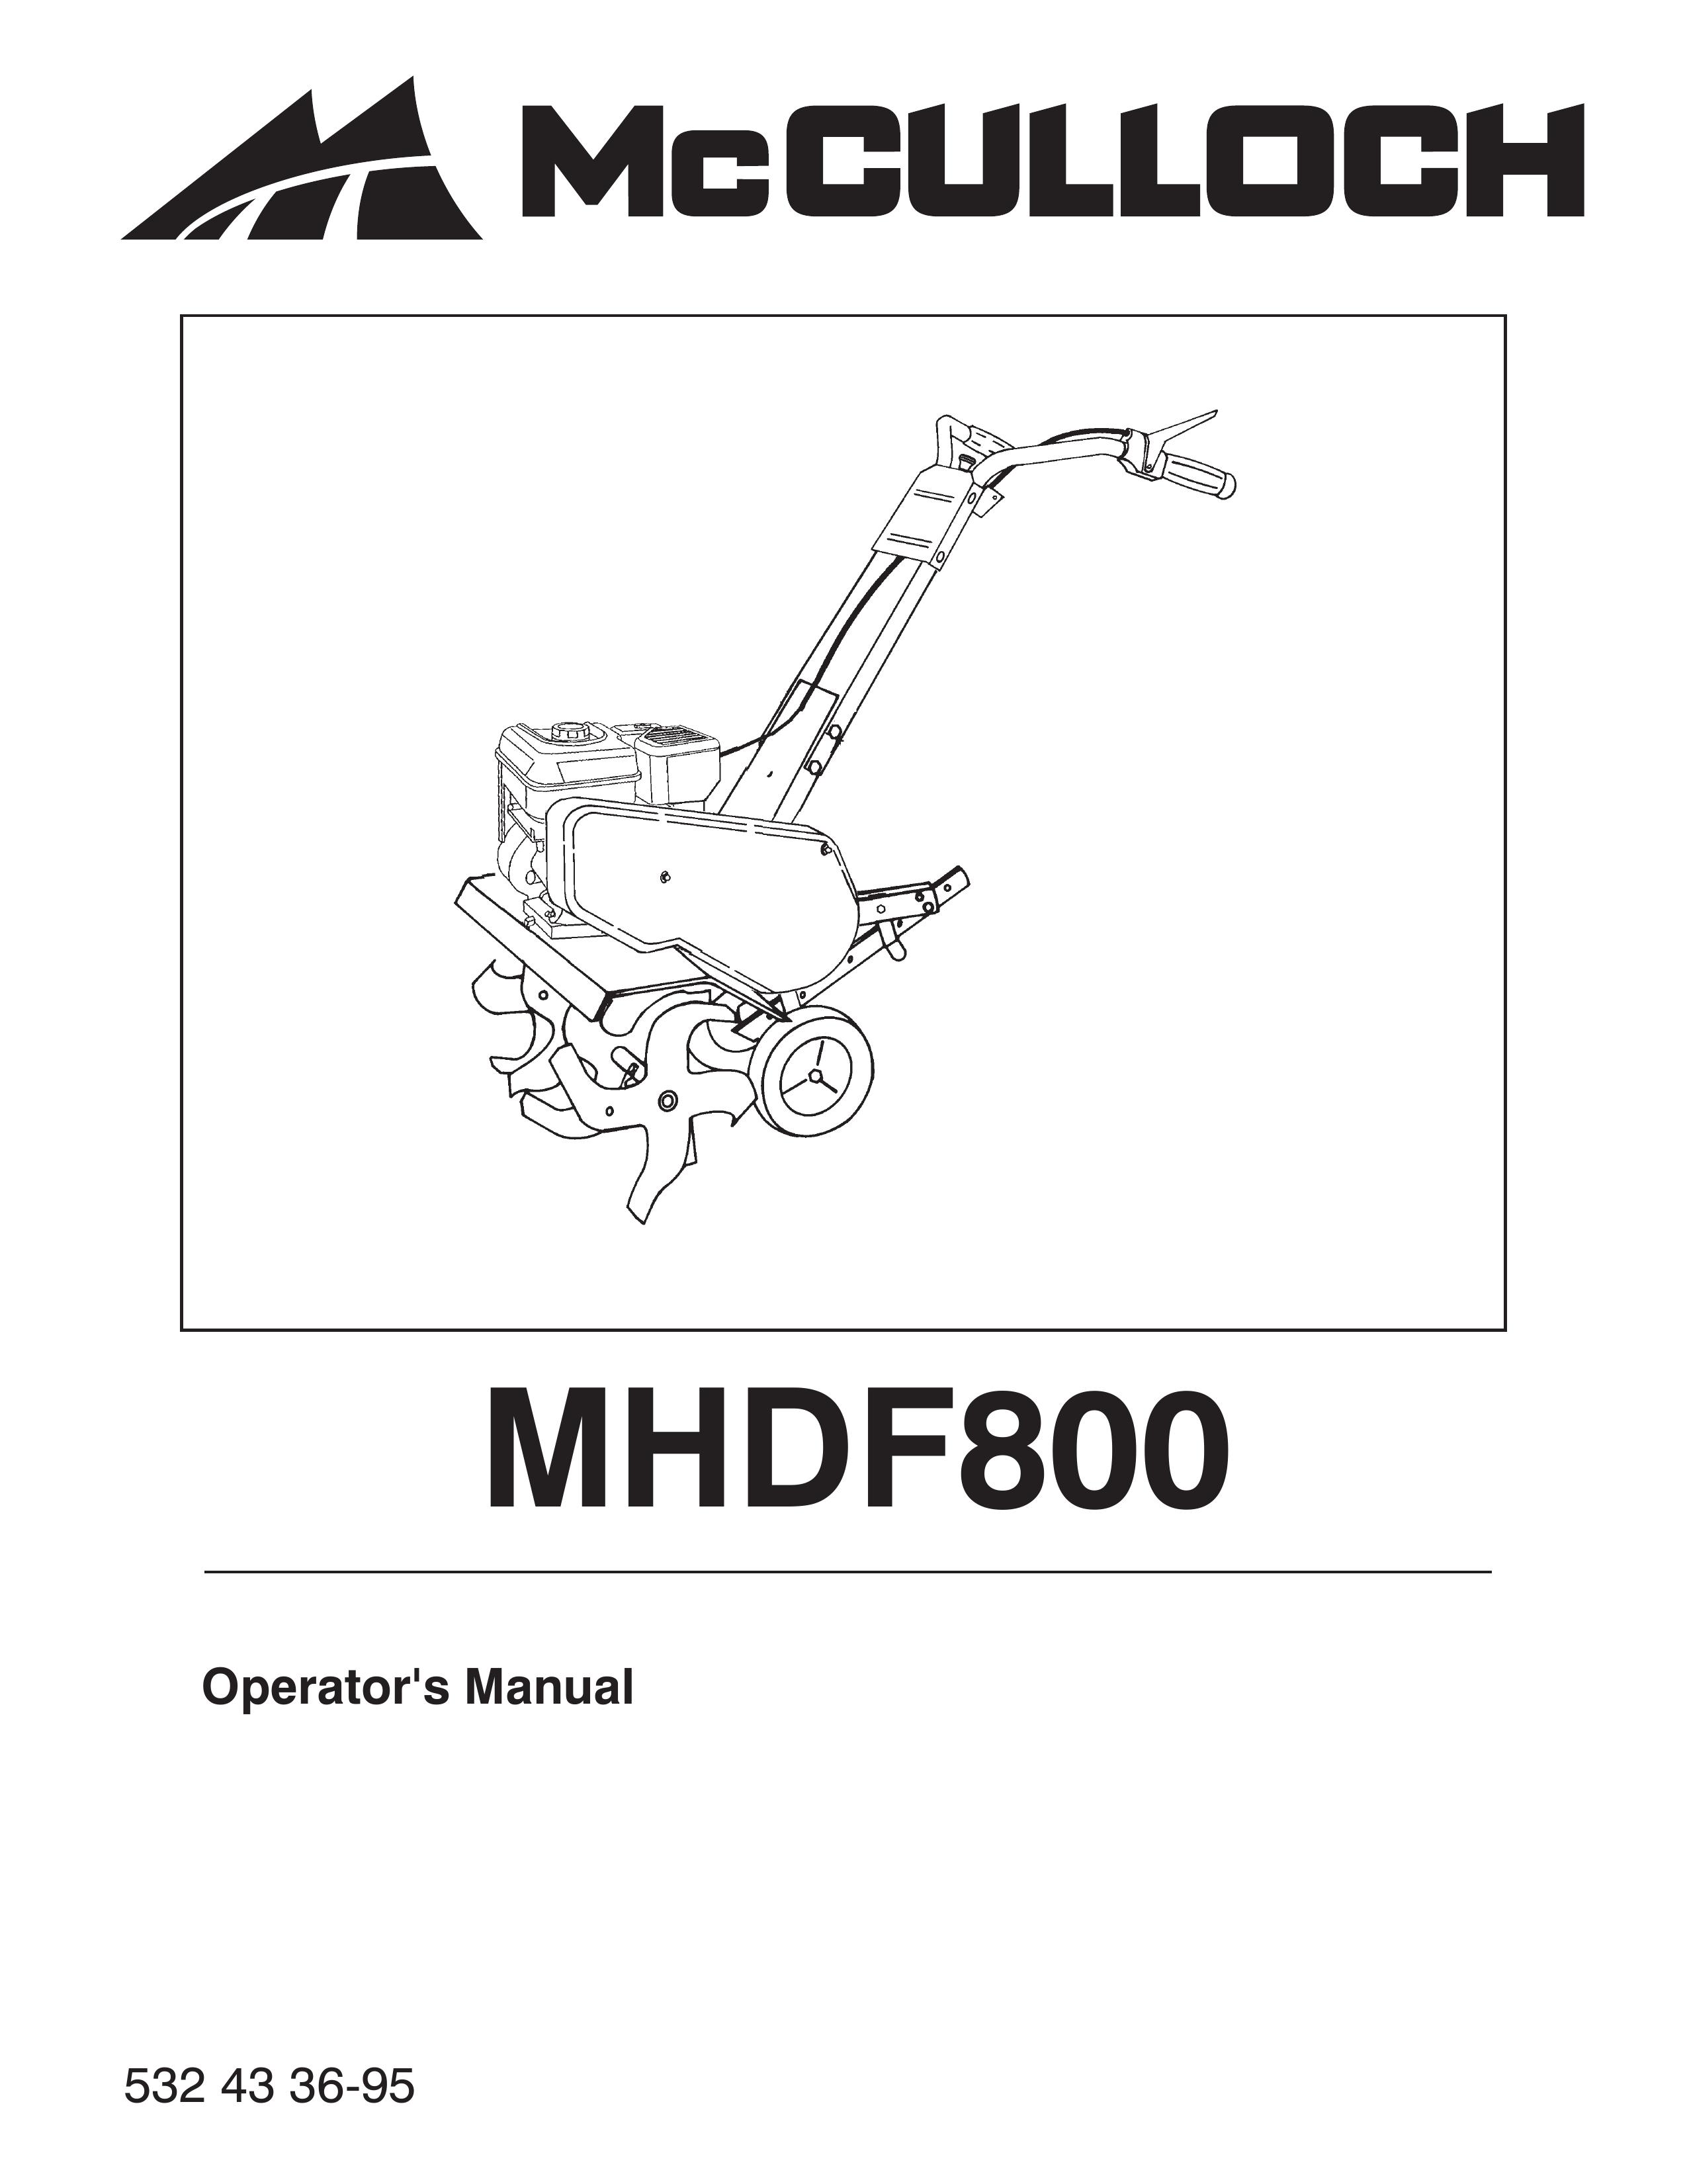 McCulloch MHDF800 Tiller User Manual